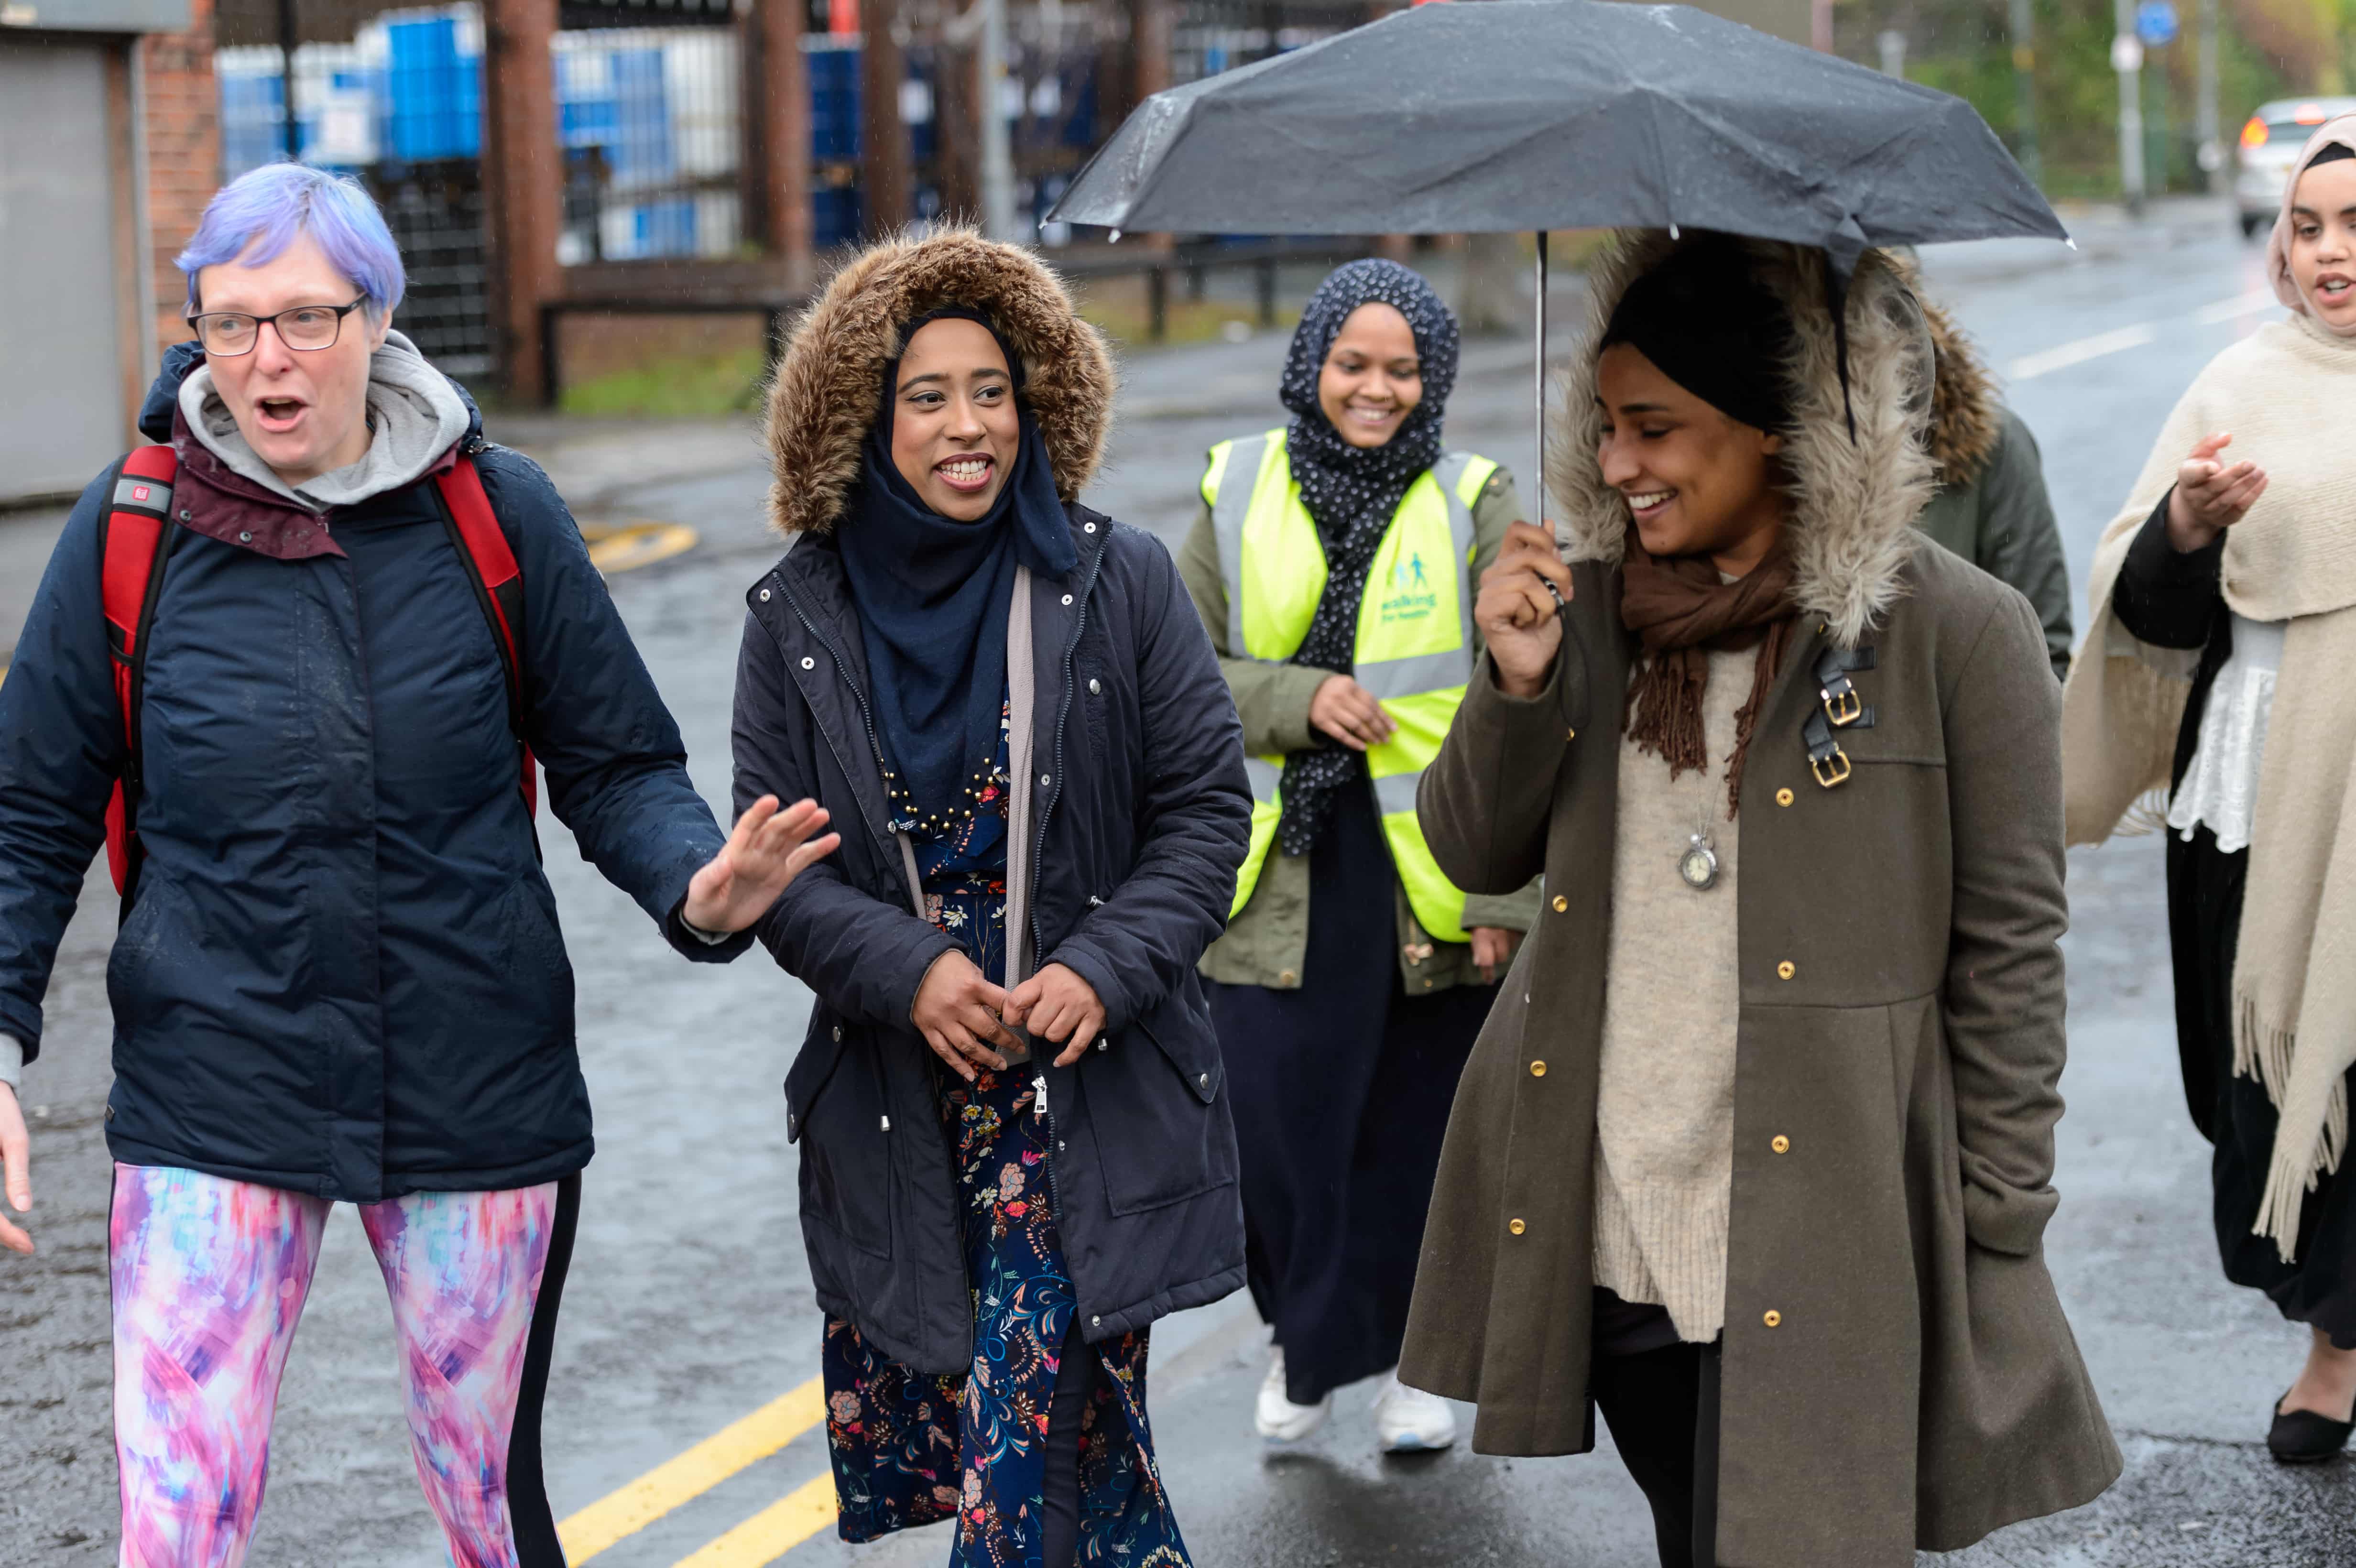 Group of women enjoying a walk in the rain